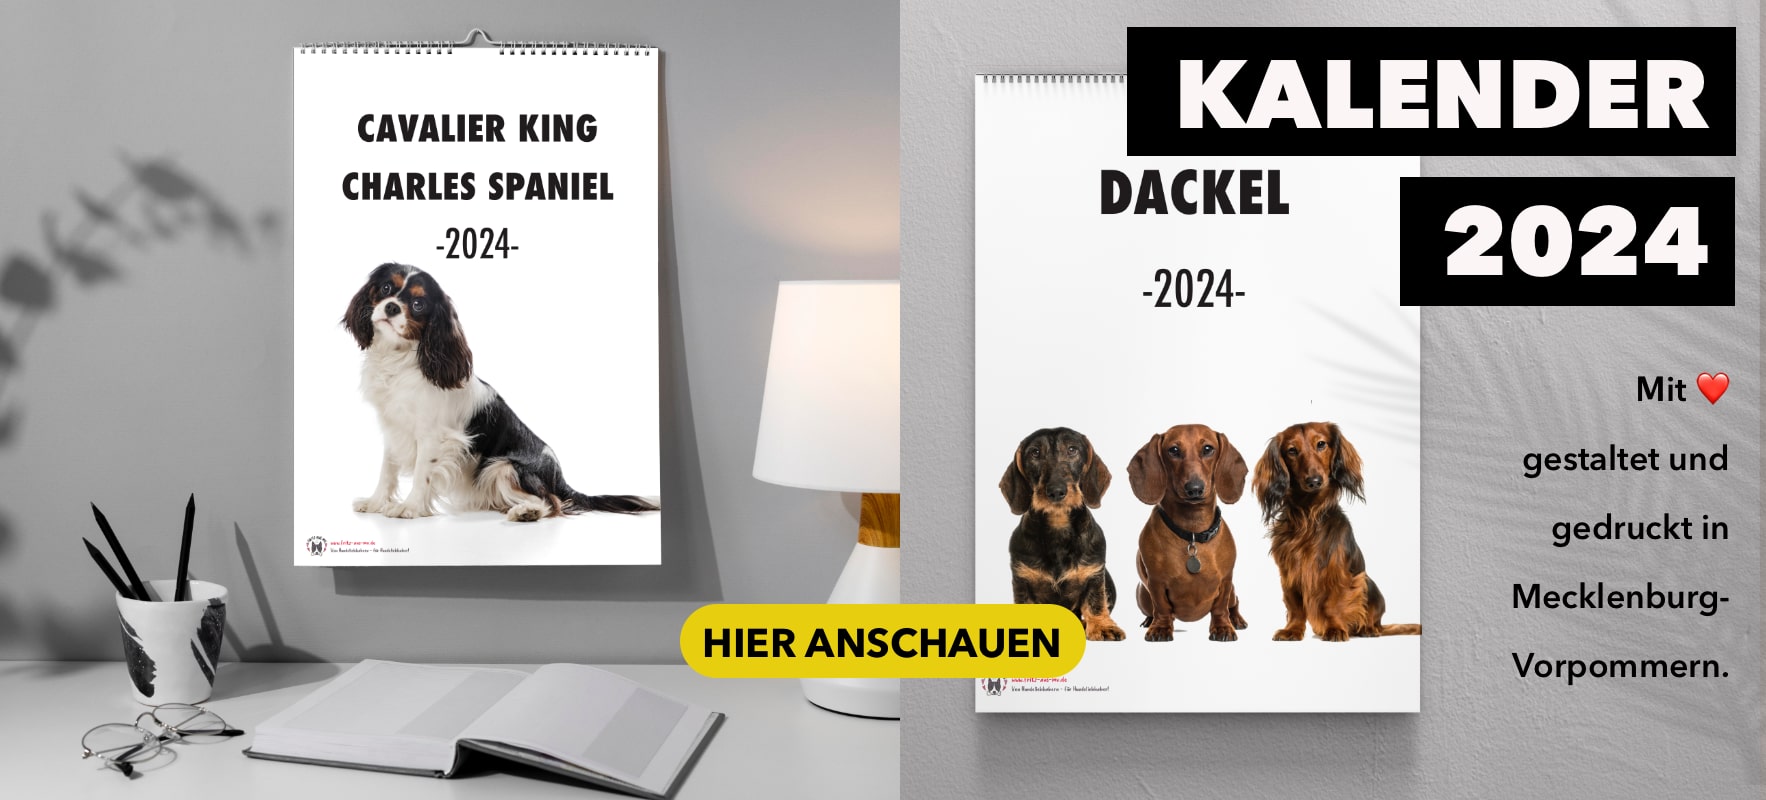 3D Schöne Haustier Hund Auto Aufkleber Mops Samojeden Dackel Hund